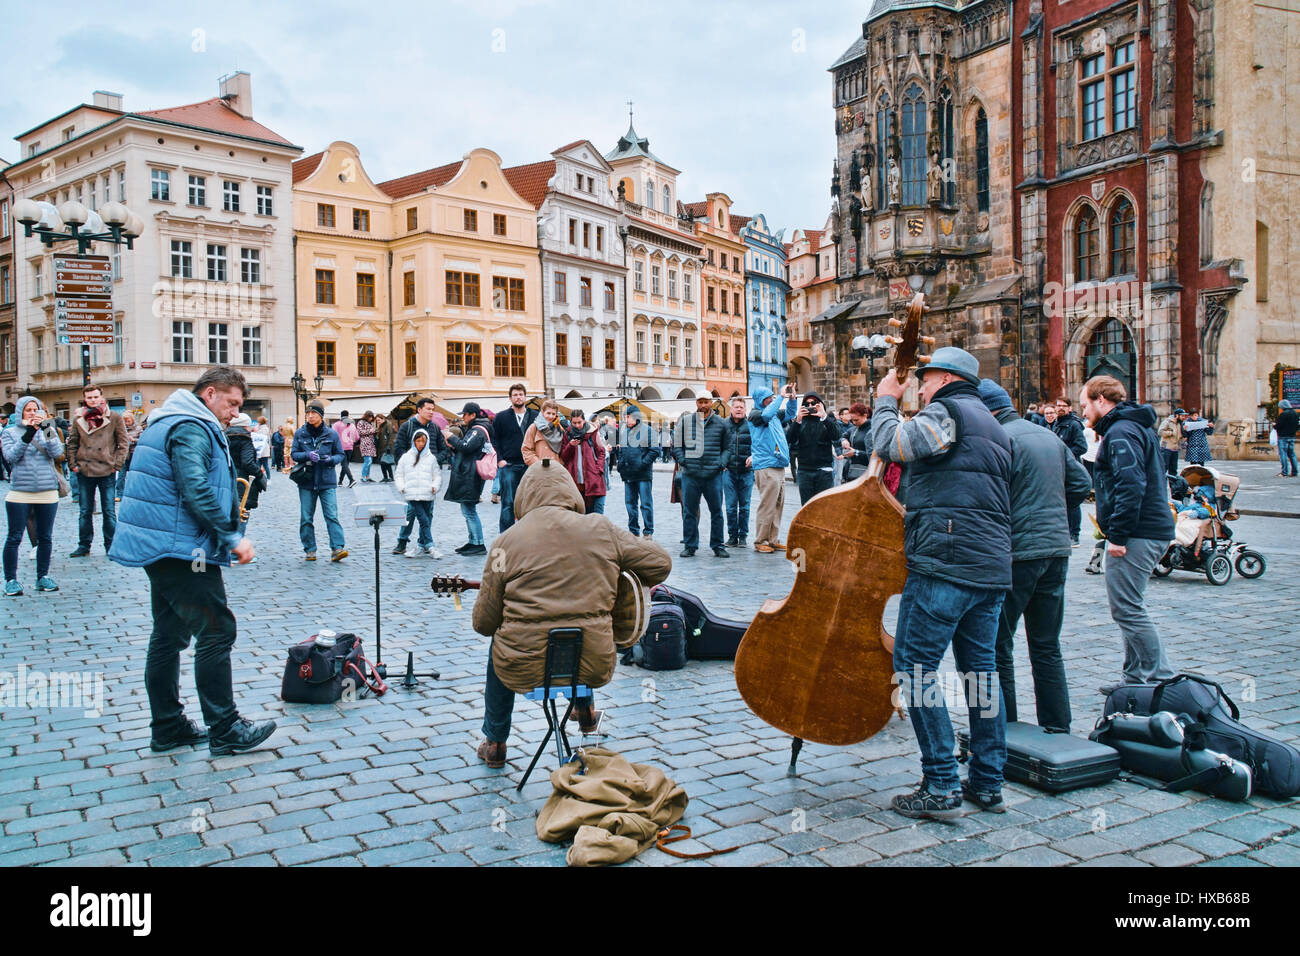 Straßenmusiker auf dem Altstädter Ring in Prag - Prag / Tschechien - 20. März 2017 Stockfoto